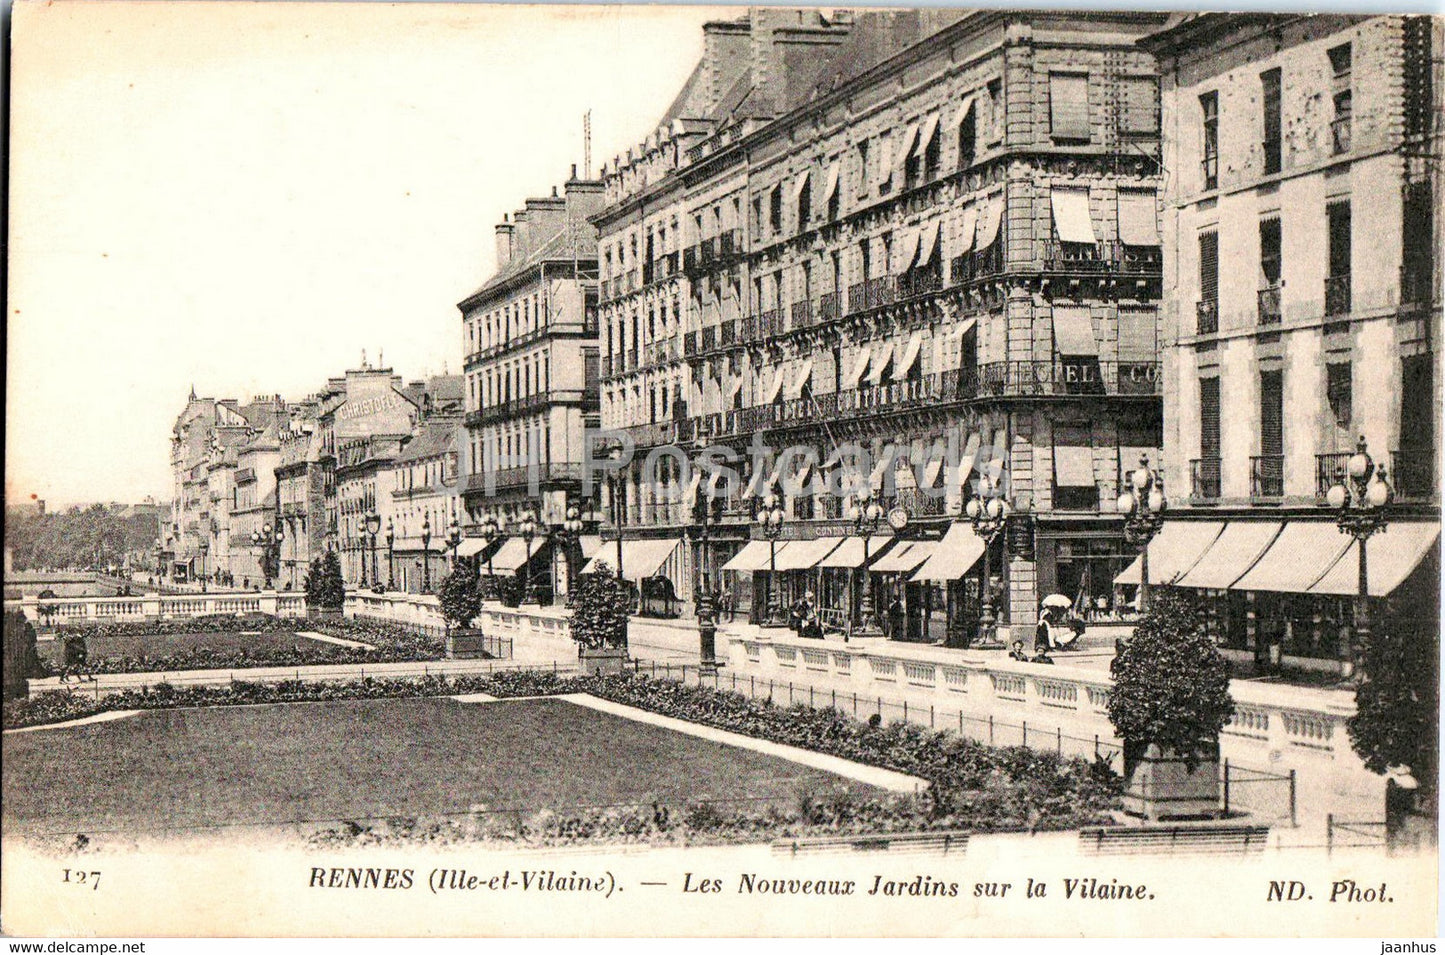 Rennes - Les Nouveaux Jardins sur la Vilaine - 127 - old postcard - France - used - JH Postcards